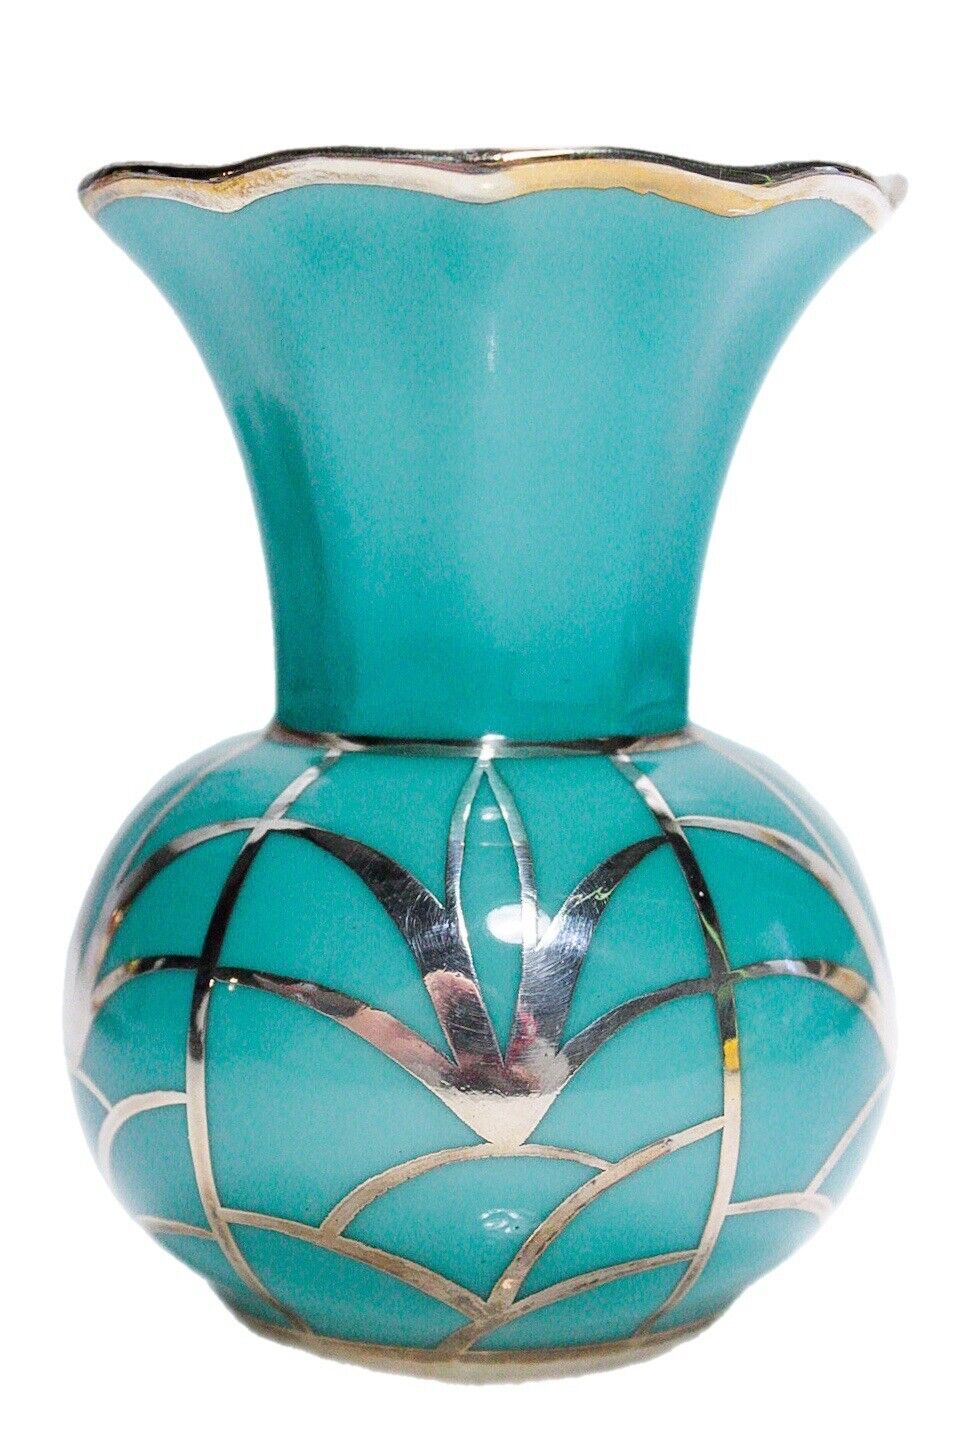 SCHWARZENHAMMER Germany Bavaria  Blue Teal Porcelain Sterling Overlay Small Vase